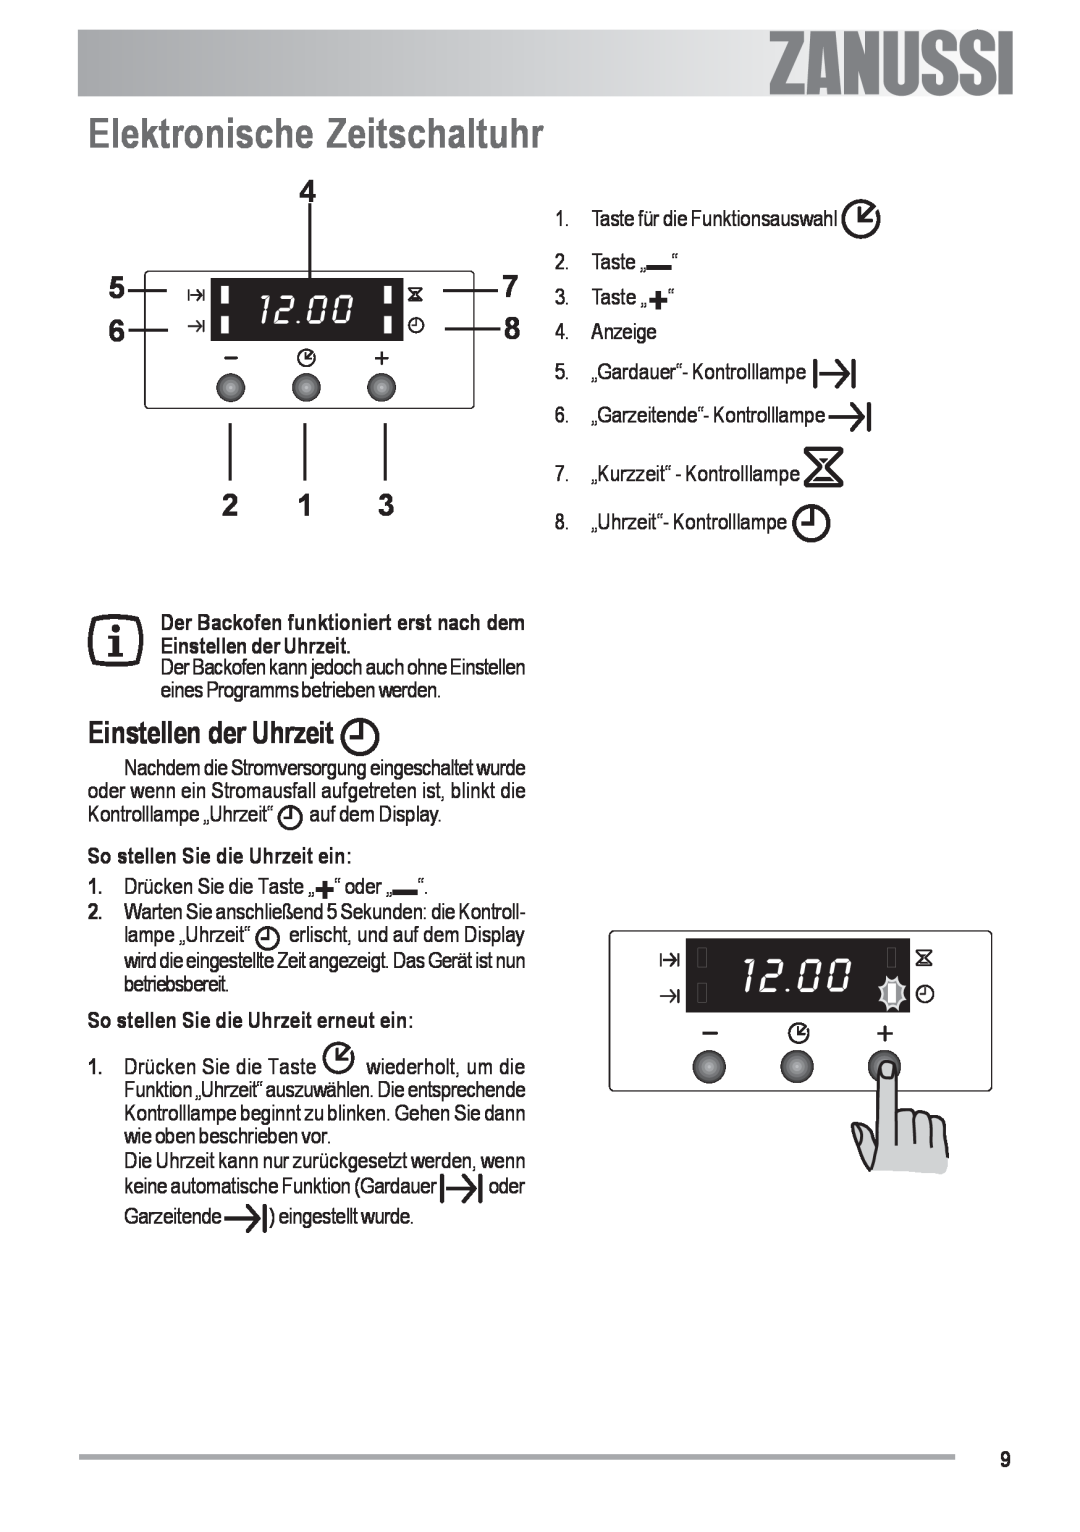 Zanussi ZOU 482 Elektronische Zeitschaltuhr, Einstellen der Uhrzeit, 8. „Uhrzeit“- Kontrolllampe, Garzeitende, Electrolux 